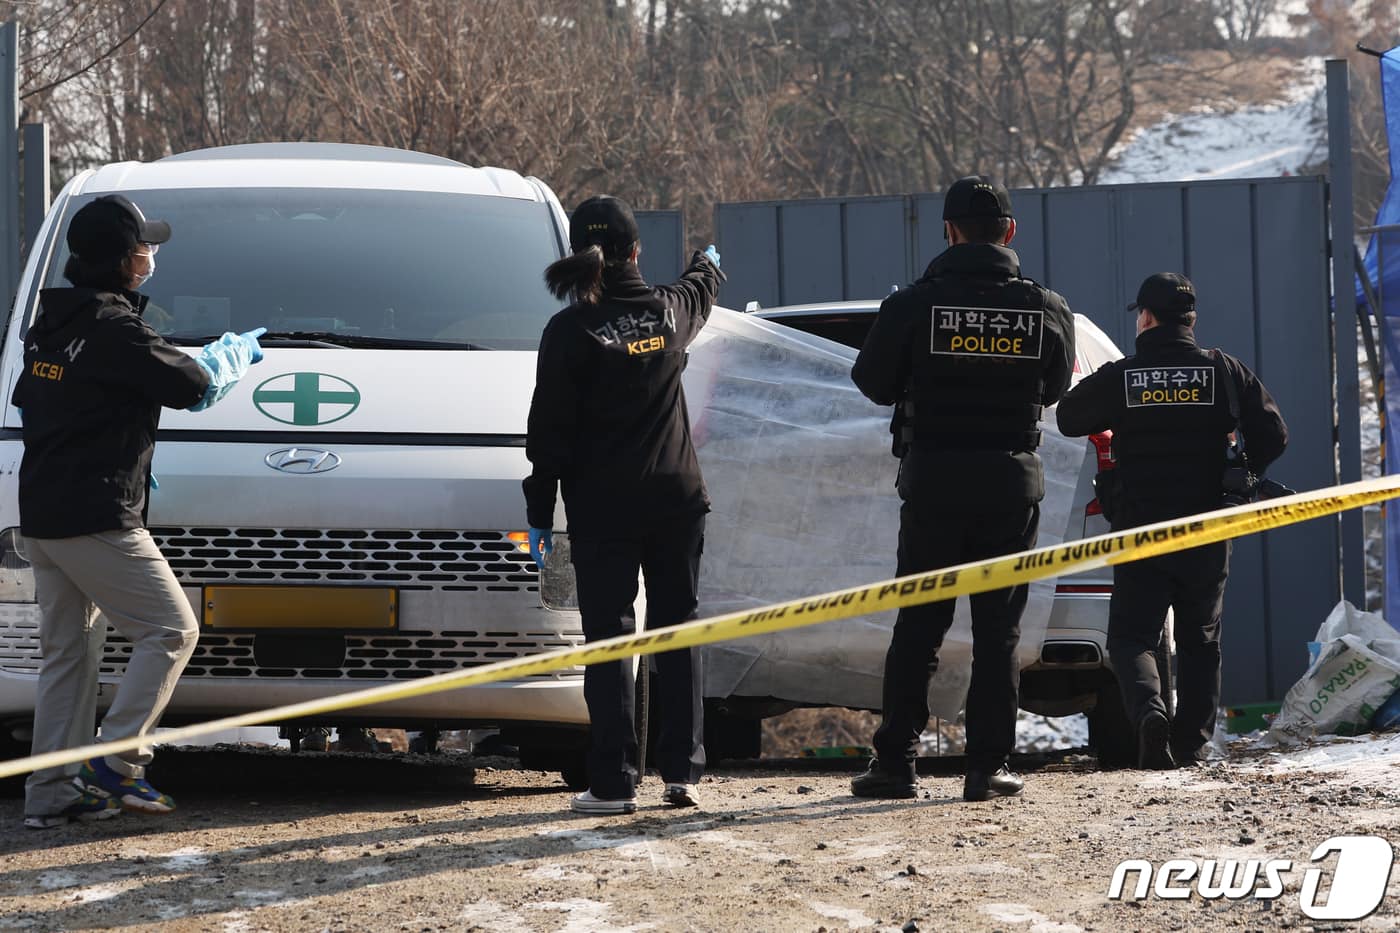 Cảnh sát tìm thấy Lee Sun Kyun thông qua định vị điện thoại, khẳng định không có thư tuyệt mệnh tại hiện trường- Ảnh 1.